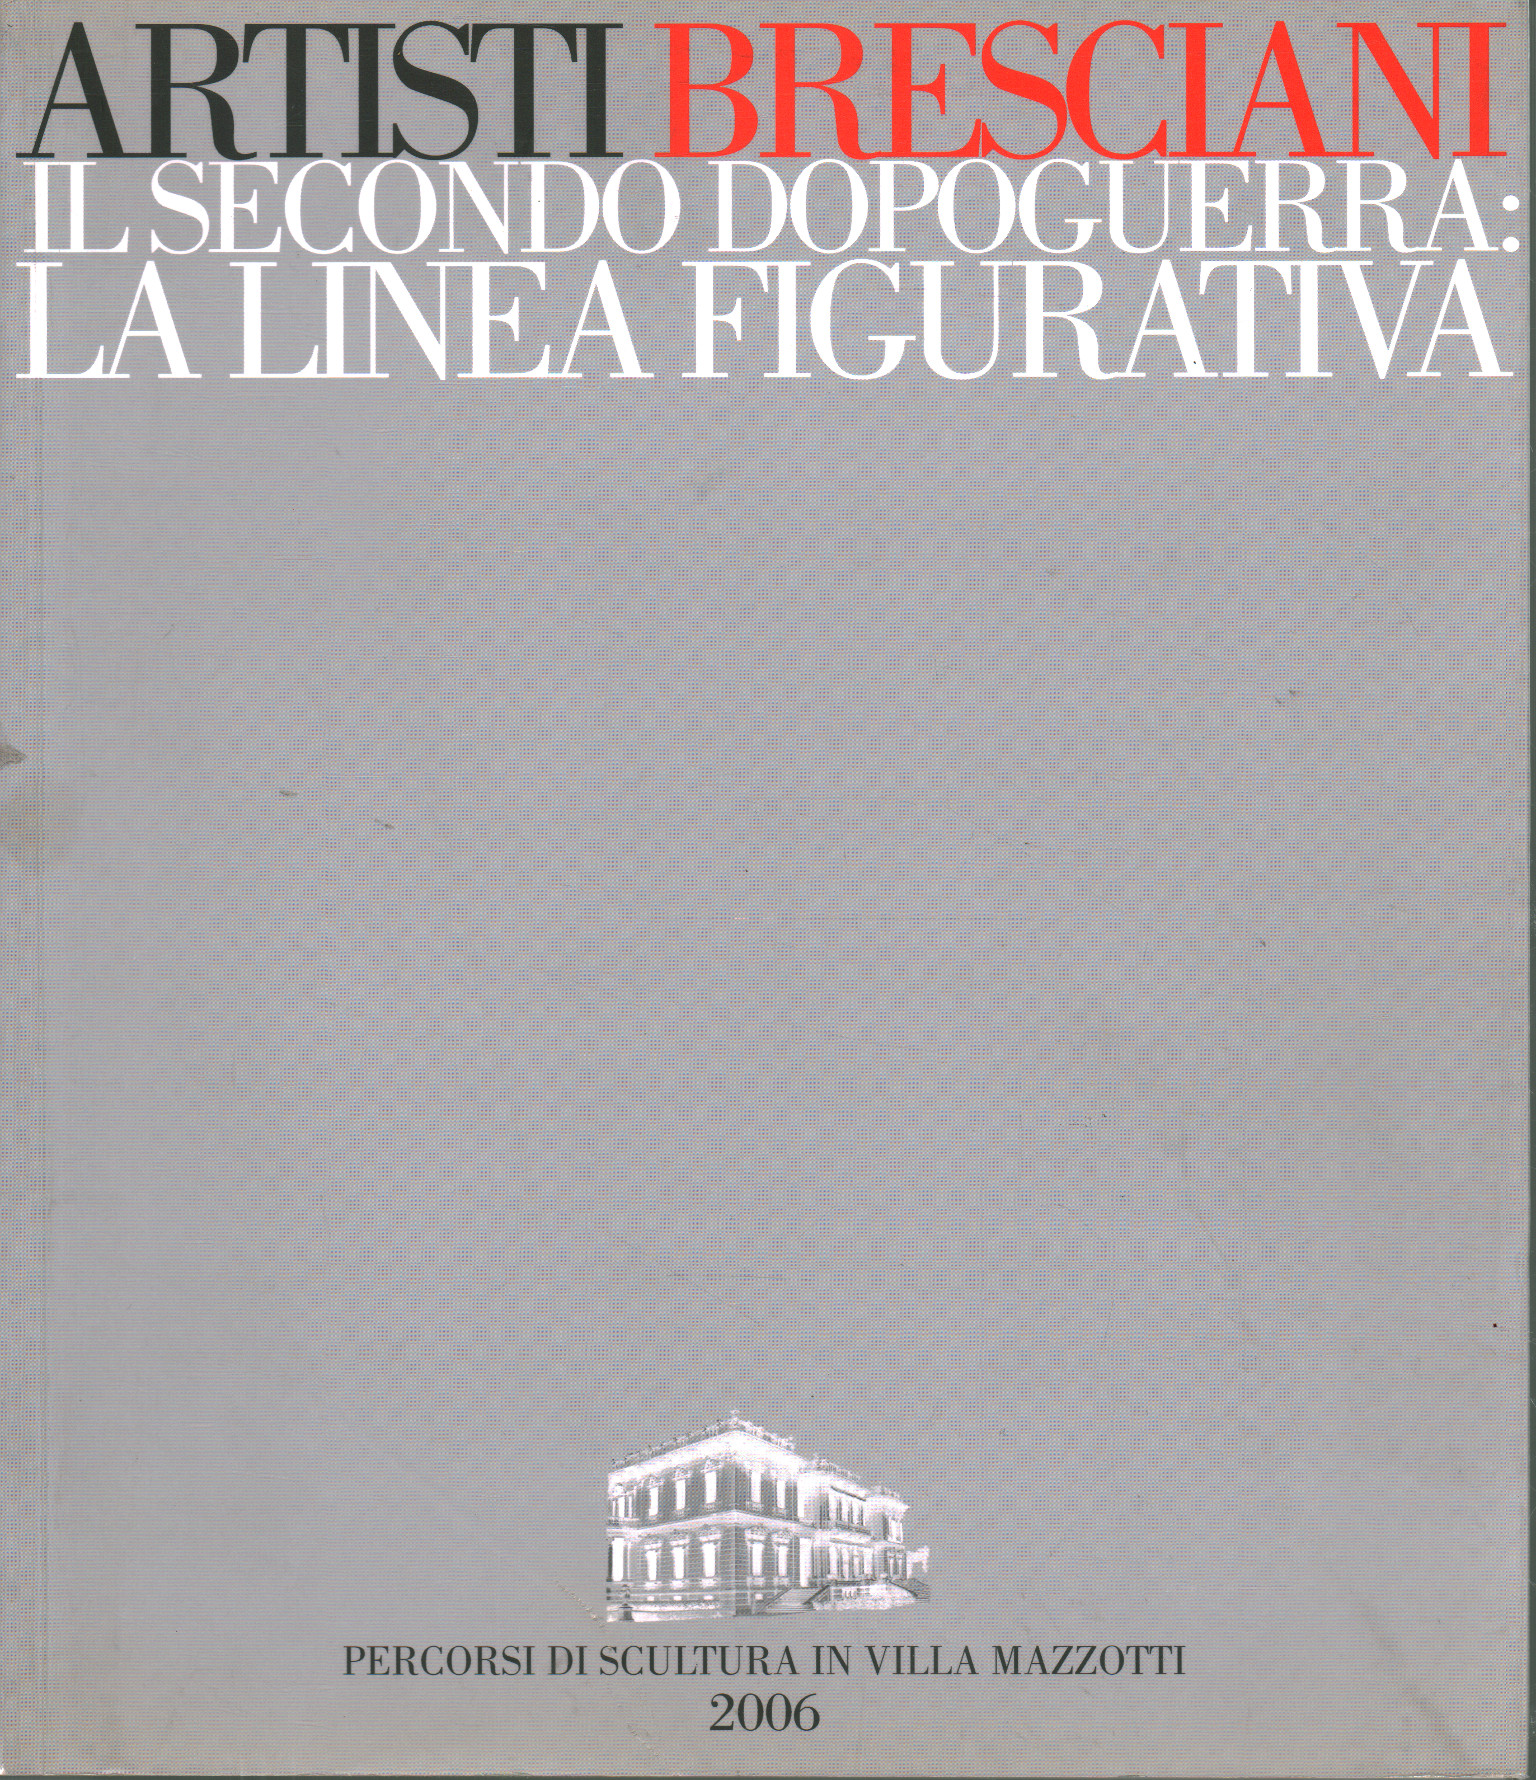 Die zweite Nachkriegszeit in Brescia: Die figürliche Linie Mauro Corradini